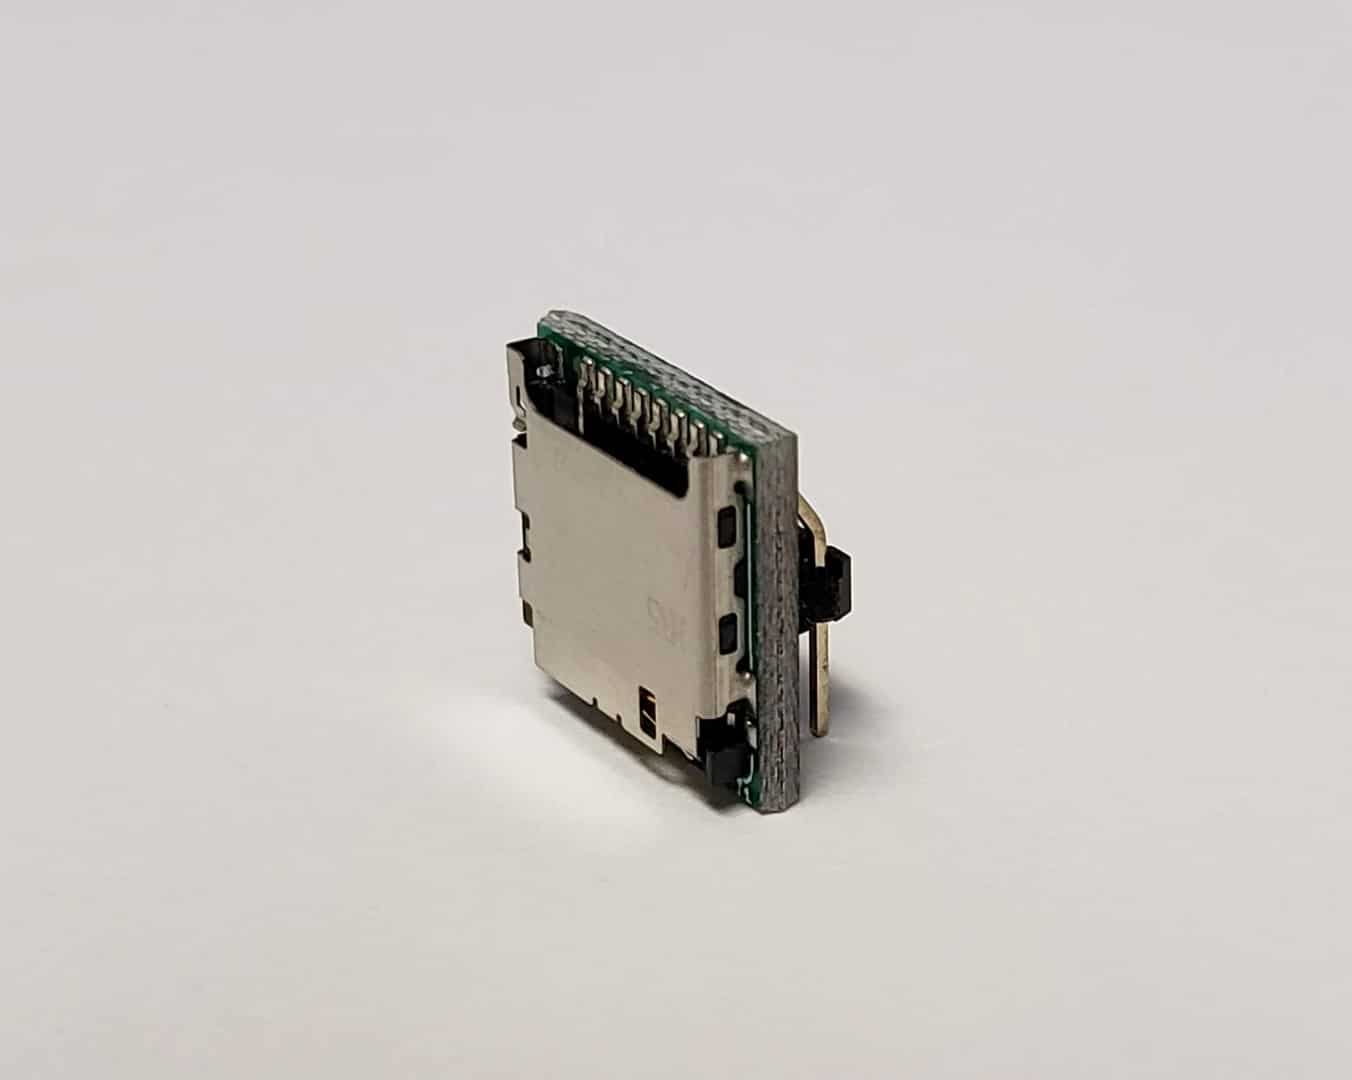 Vertical card adapter